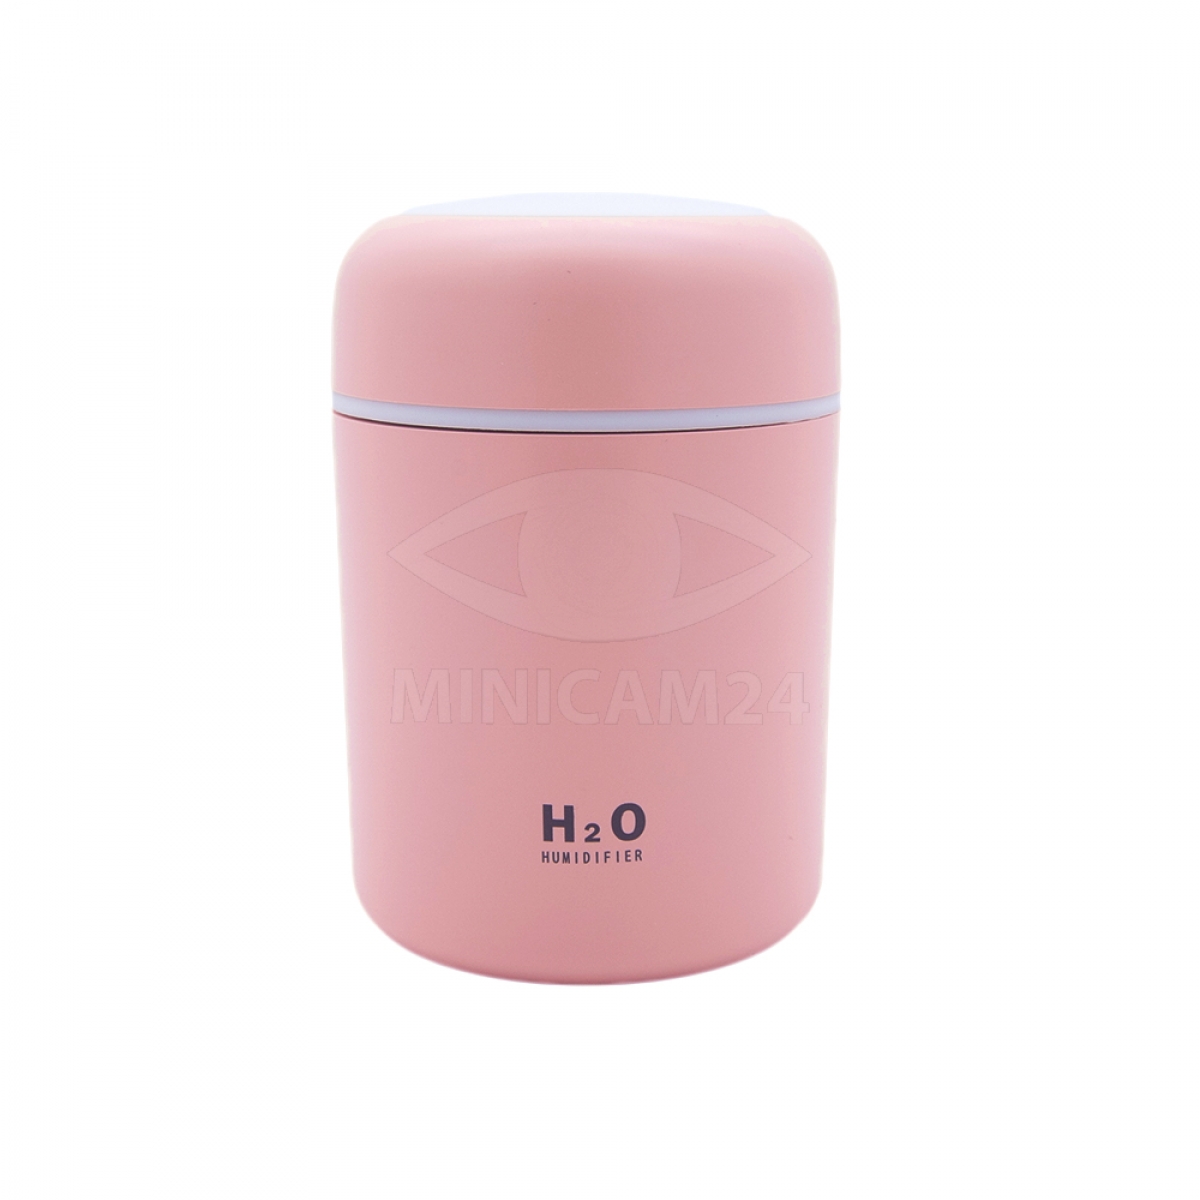 Увлажнитель воздуха H20 розовый